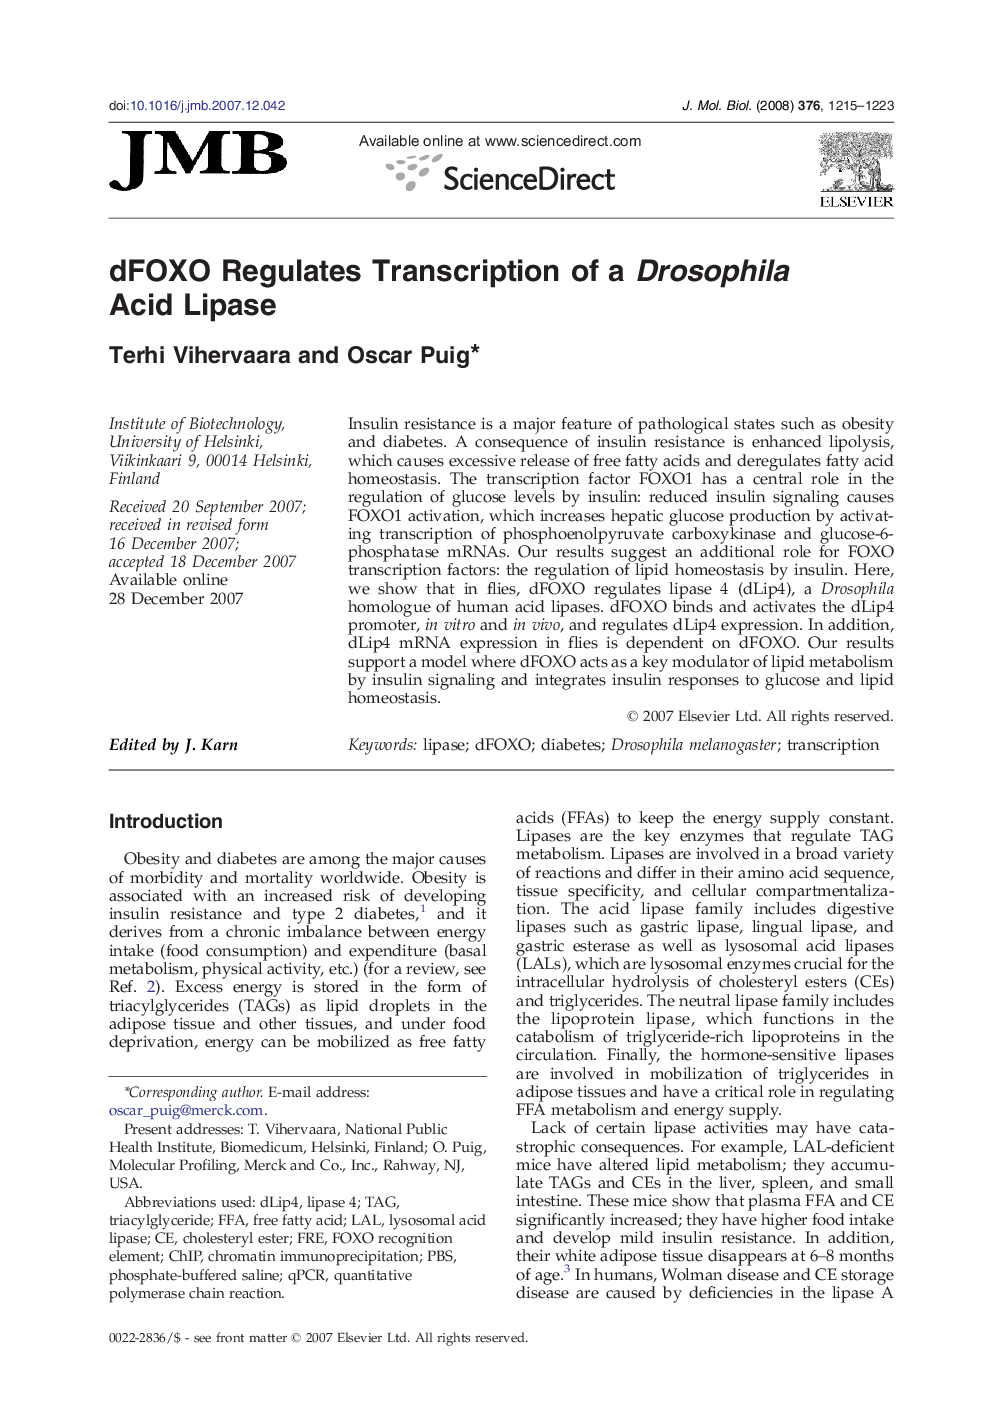 dFOXO Regulates Transcription of a Drosophila Acid Lipase